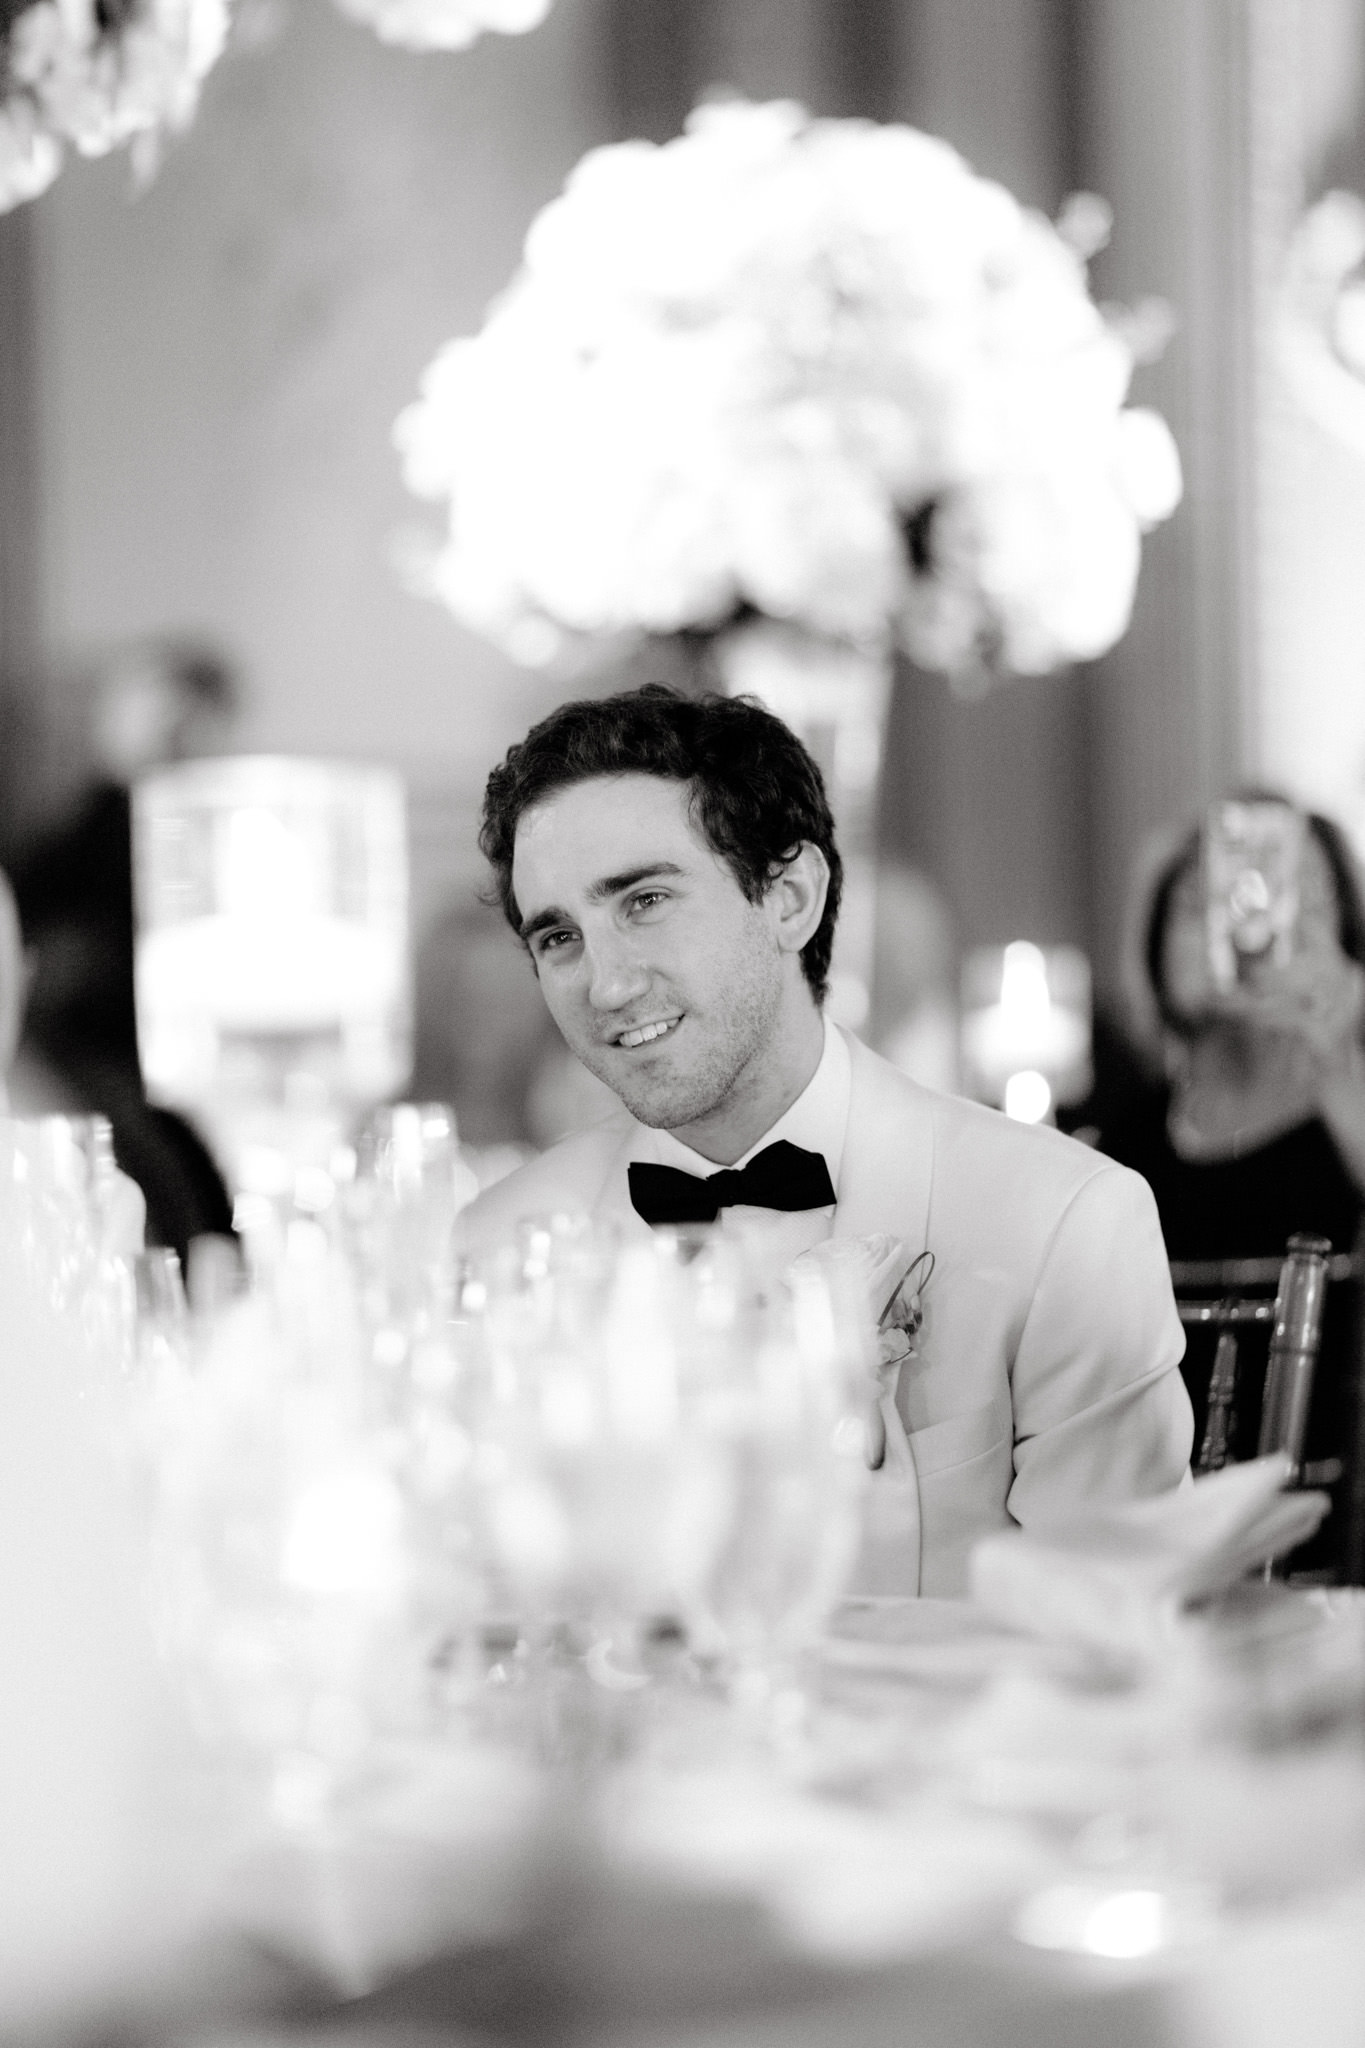 A man in a white tuxedo smiles